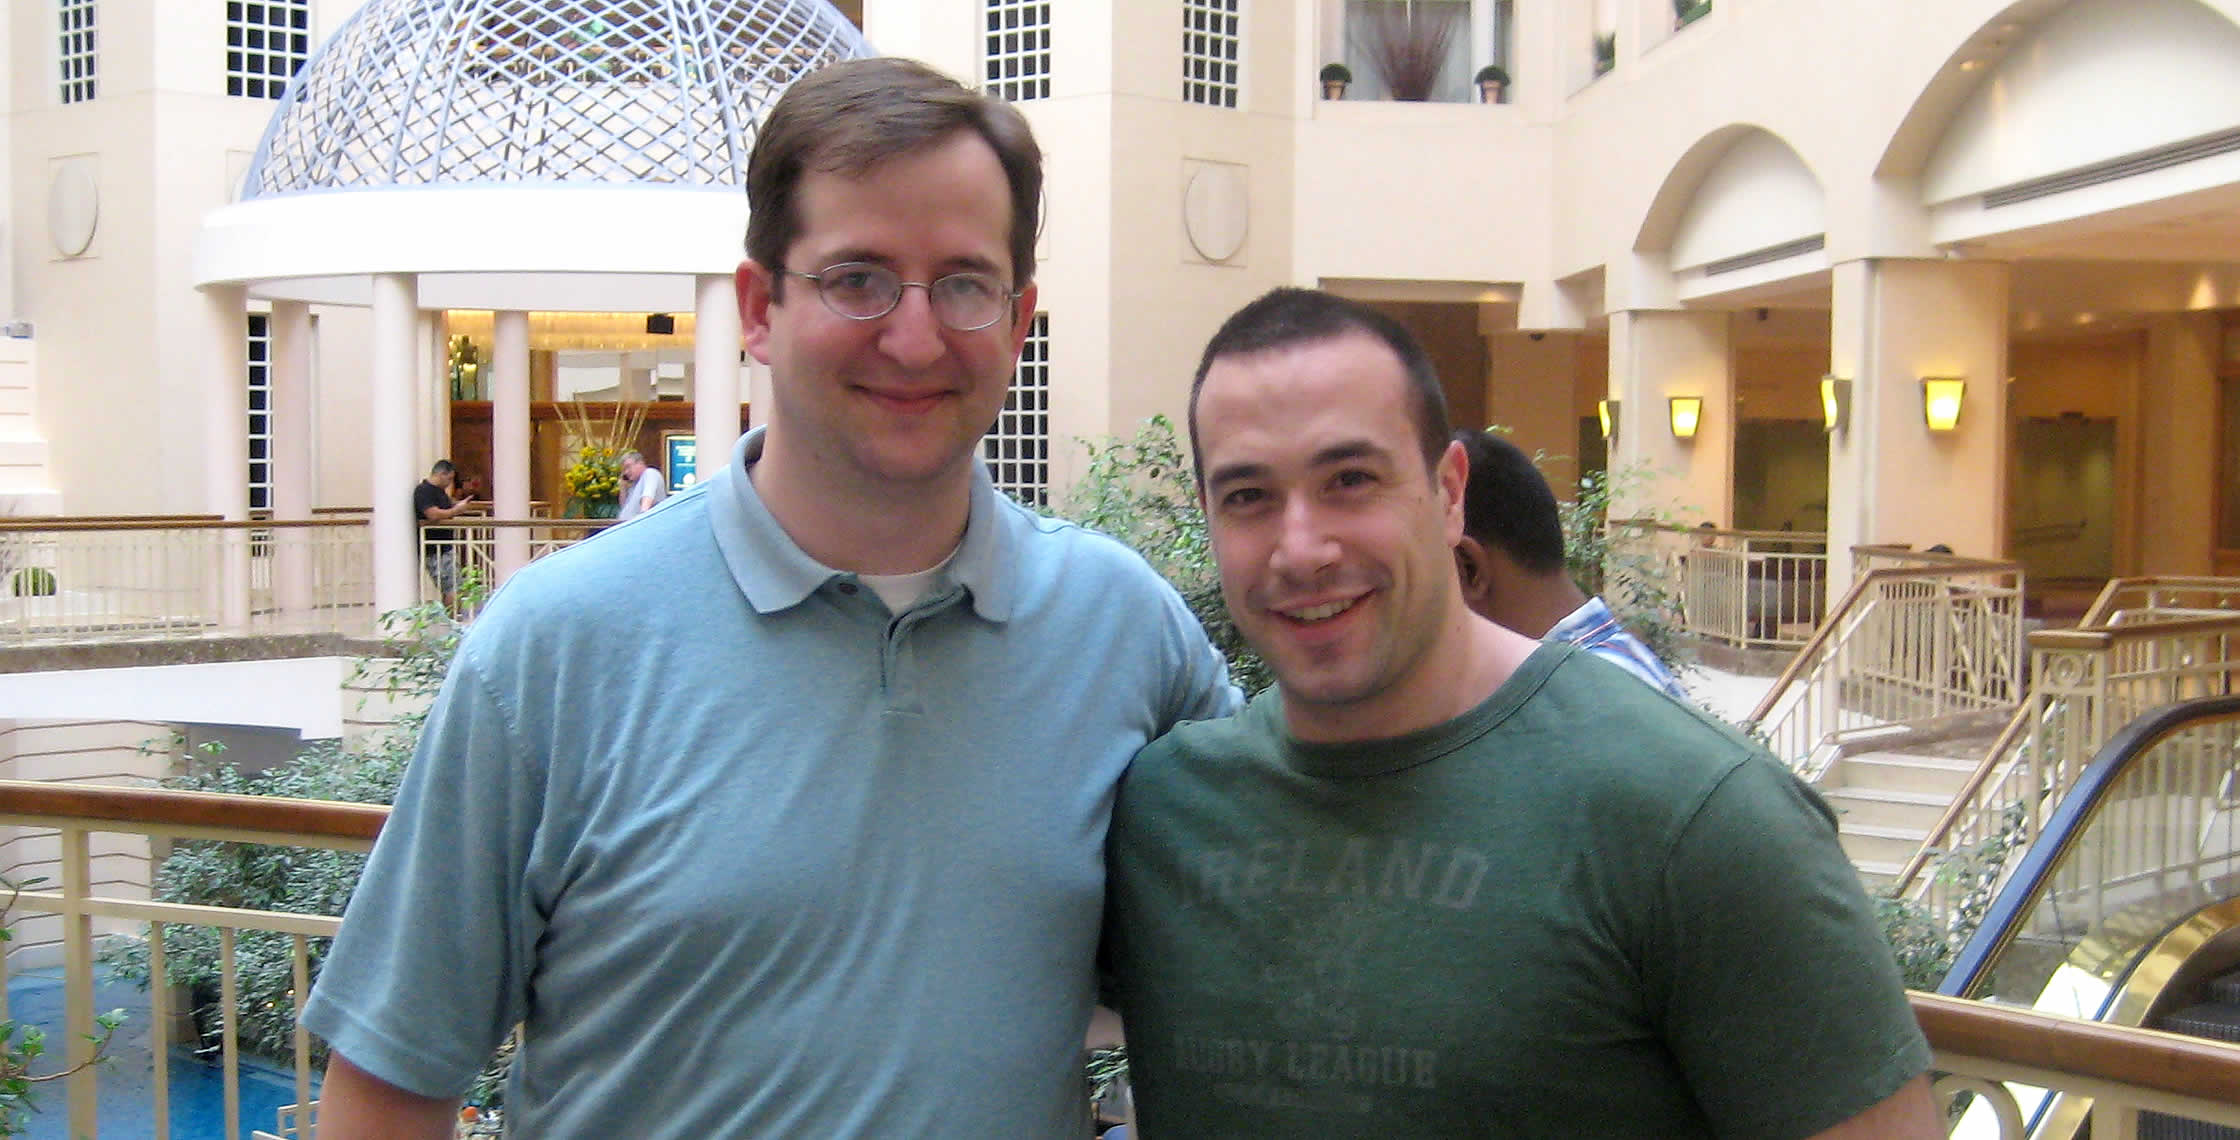 Ben Nadel at CFUNITED 2008 (Washington, D.C.) with: John Mason